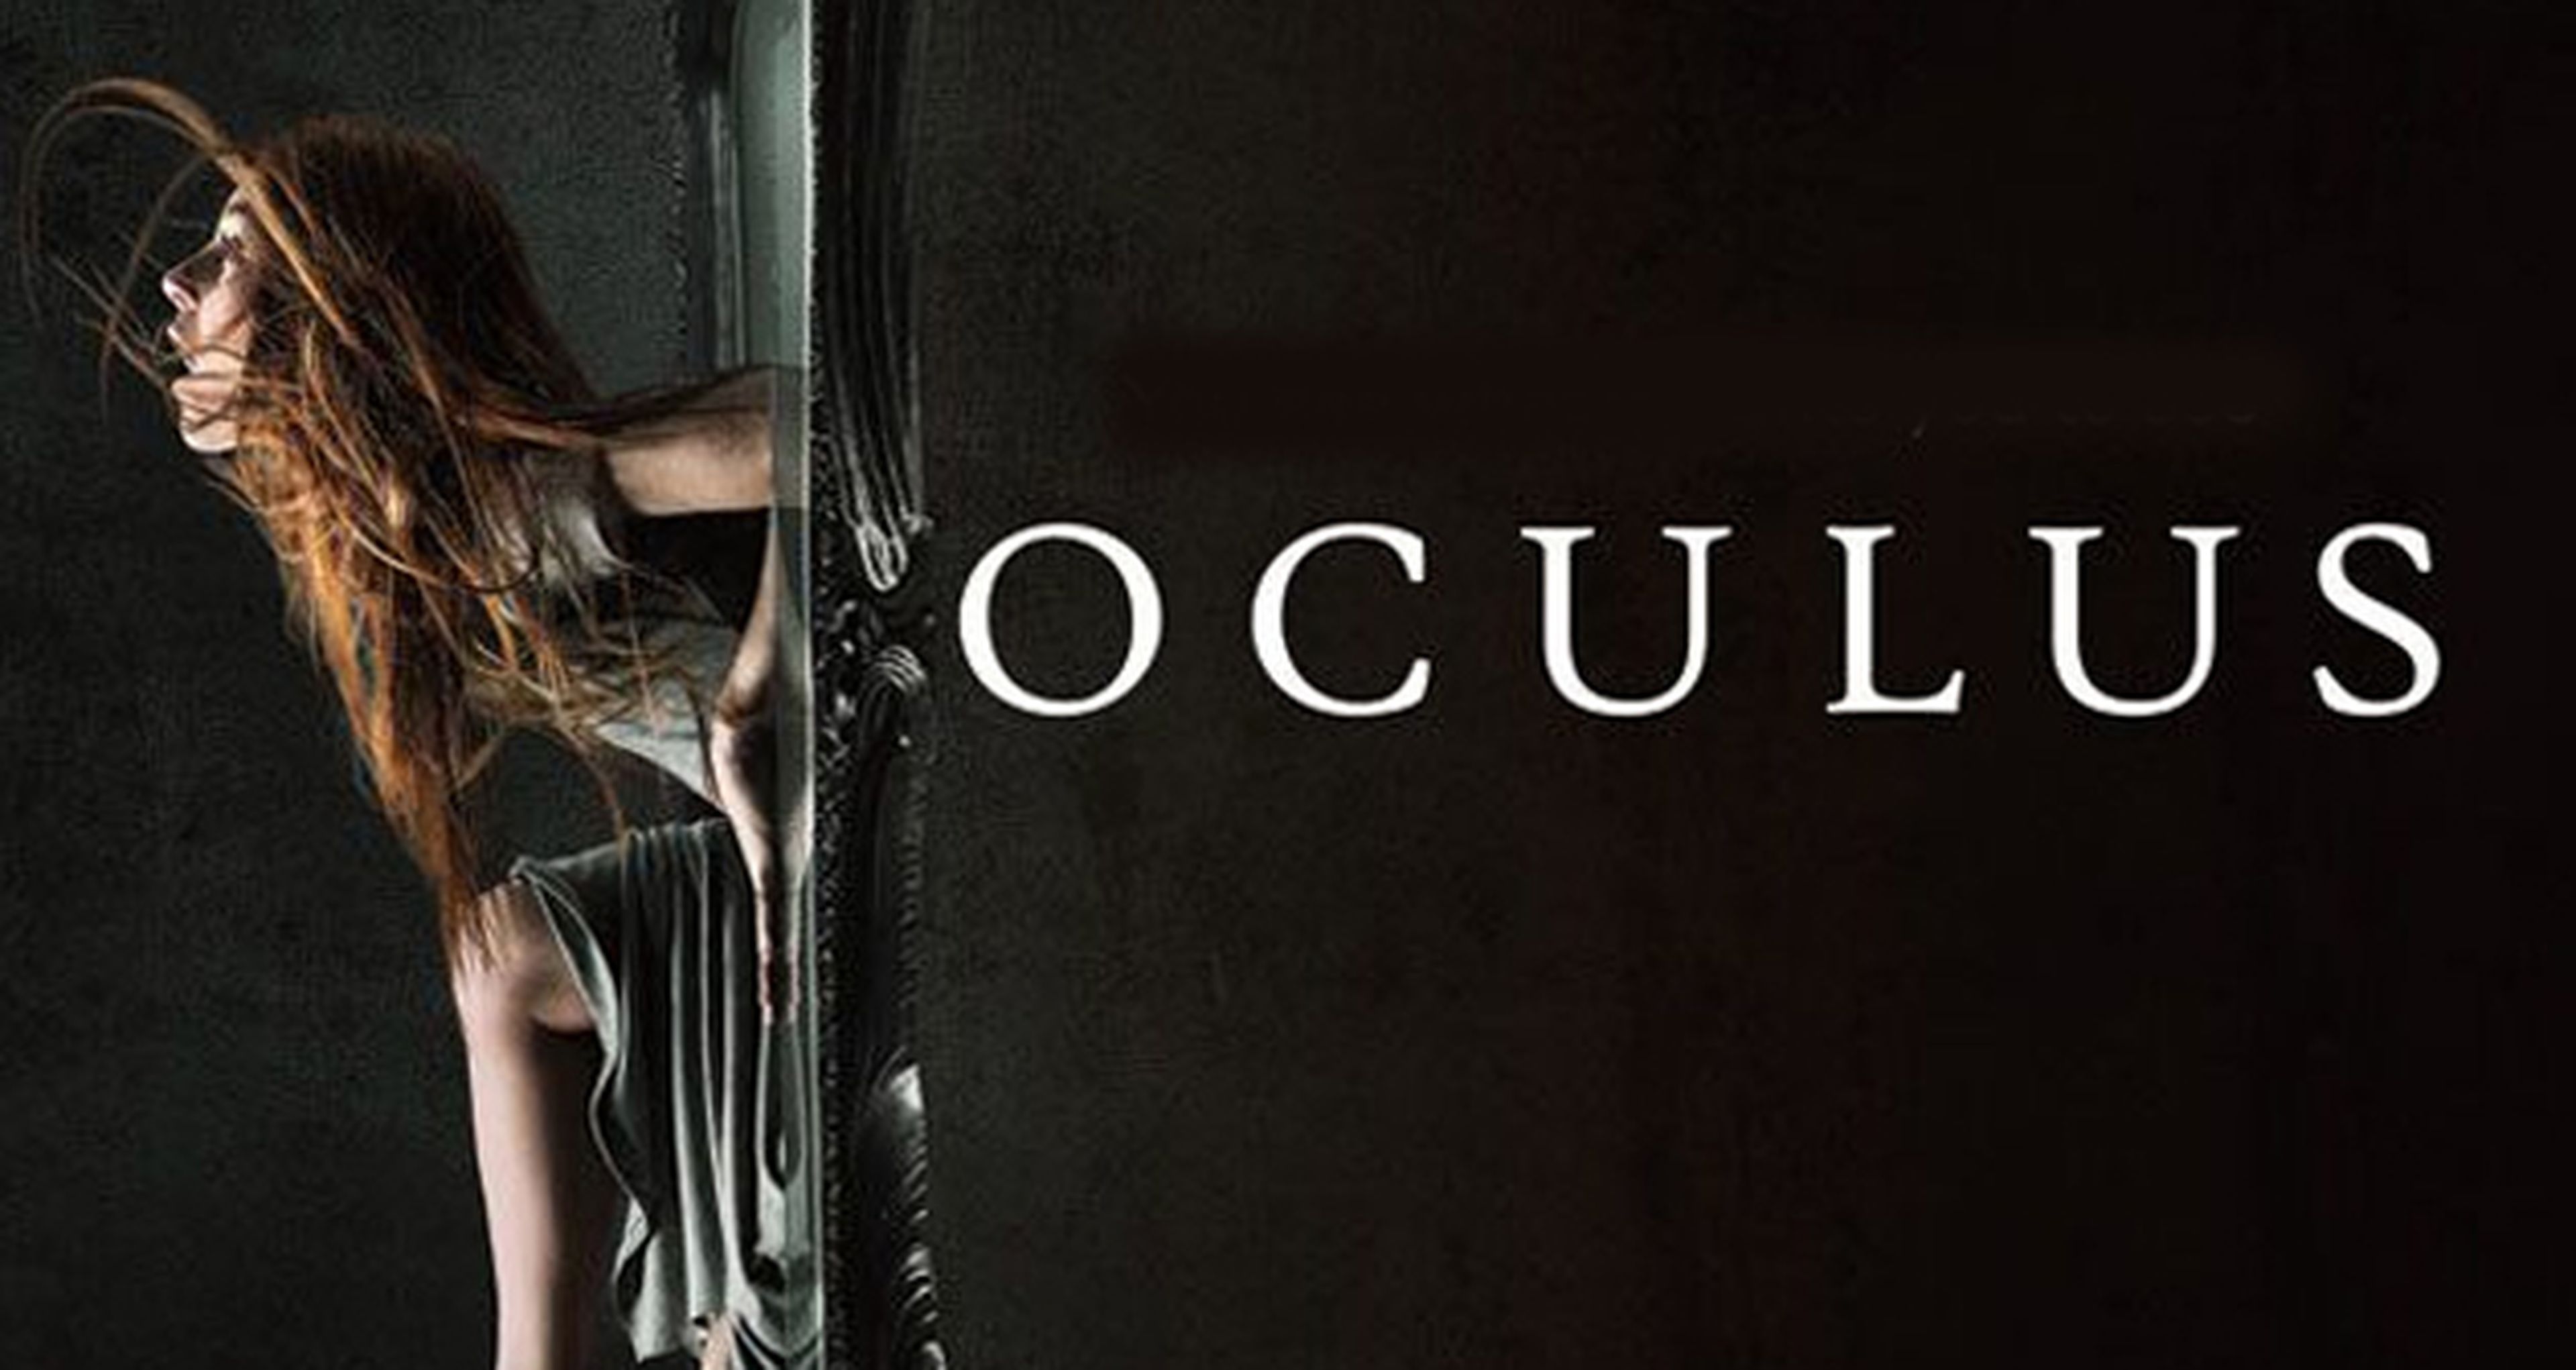 Nuevo y evocador cartel del thriller de terror Oculus